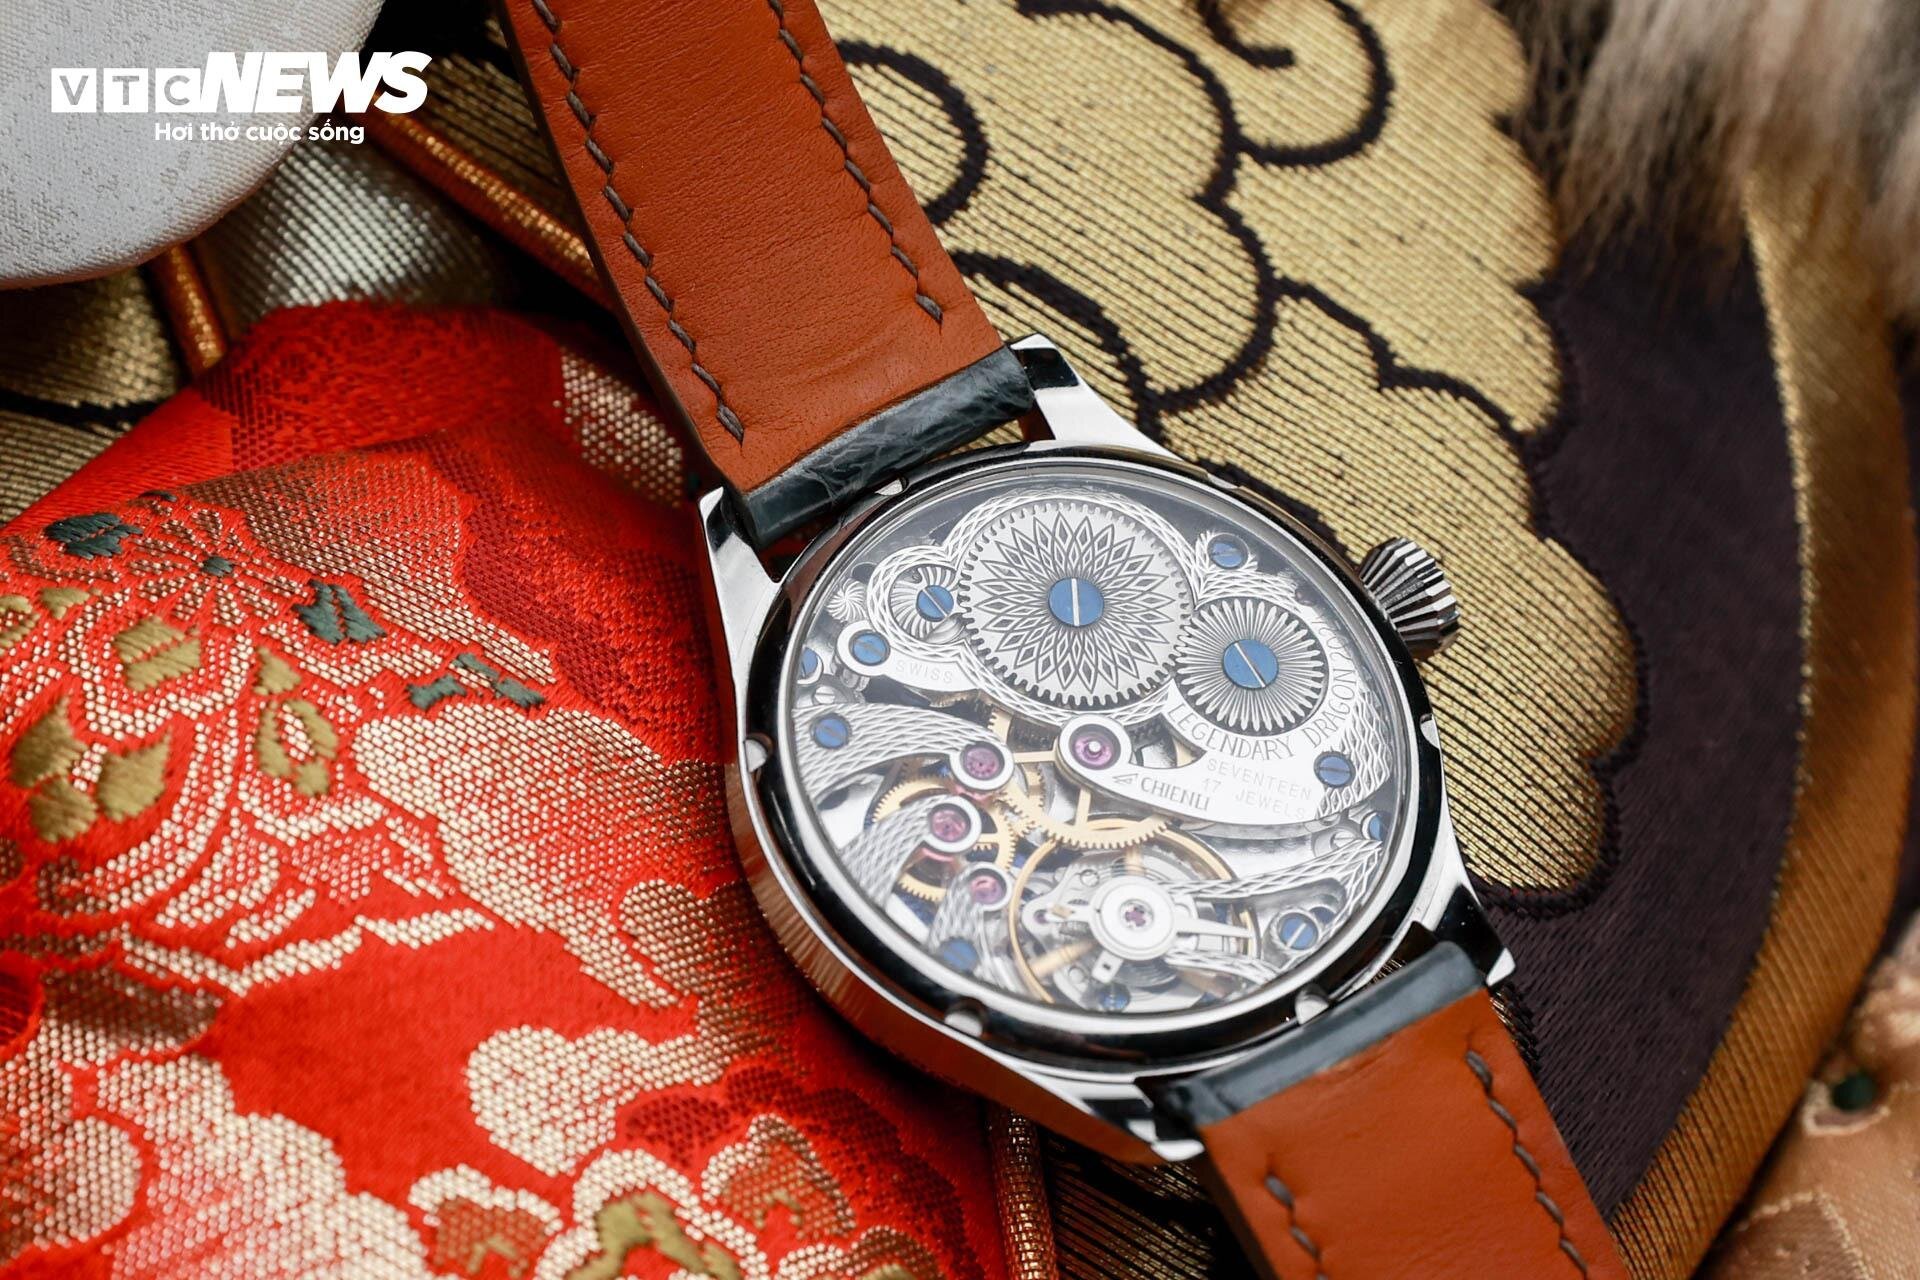 Chiếc đồng hồ bằng titan được thợ thủ công Việt định giá 300 triệu đồng - 10